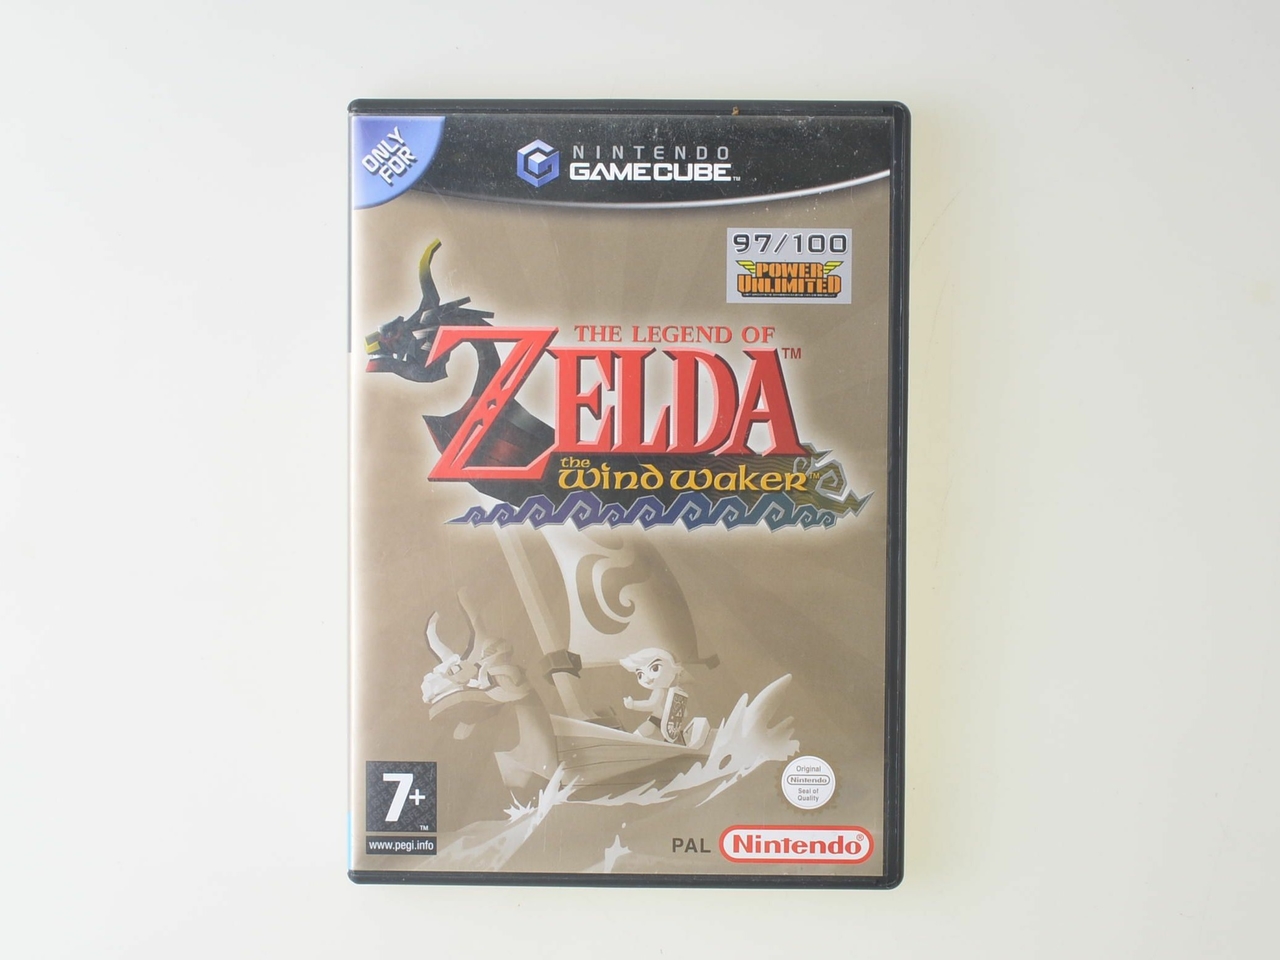 The Legend of Zelda The Windwaker Kopen | Gamecube Games